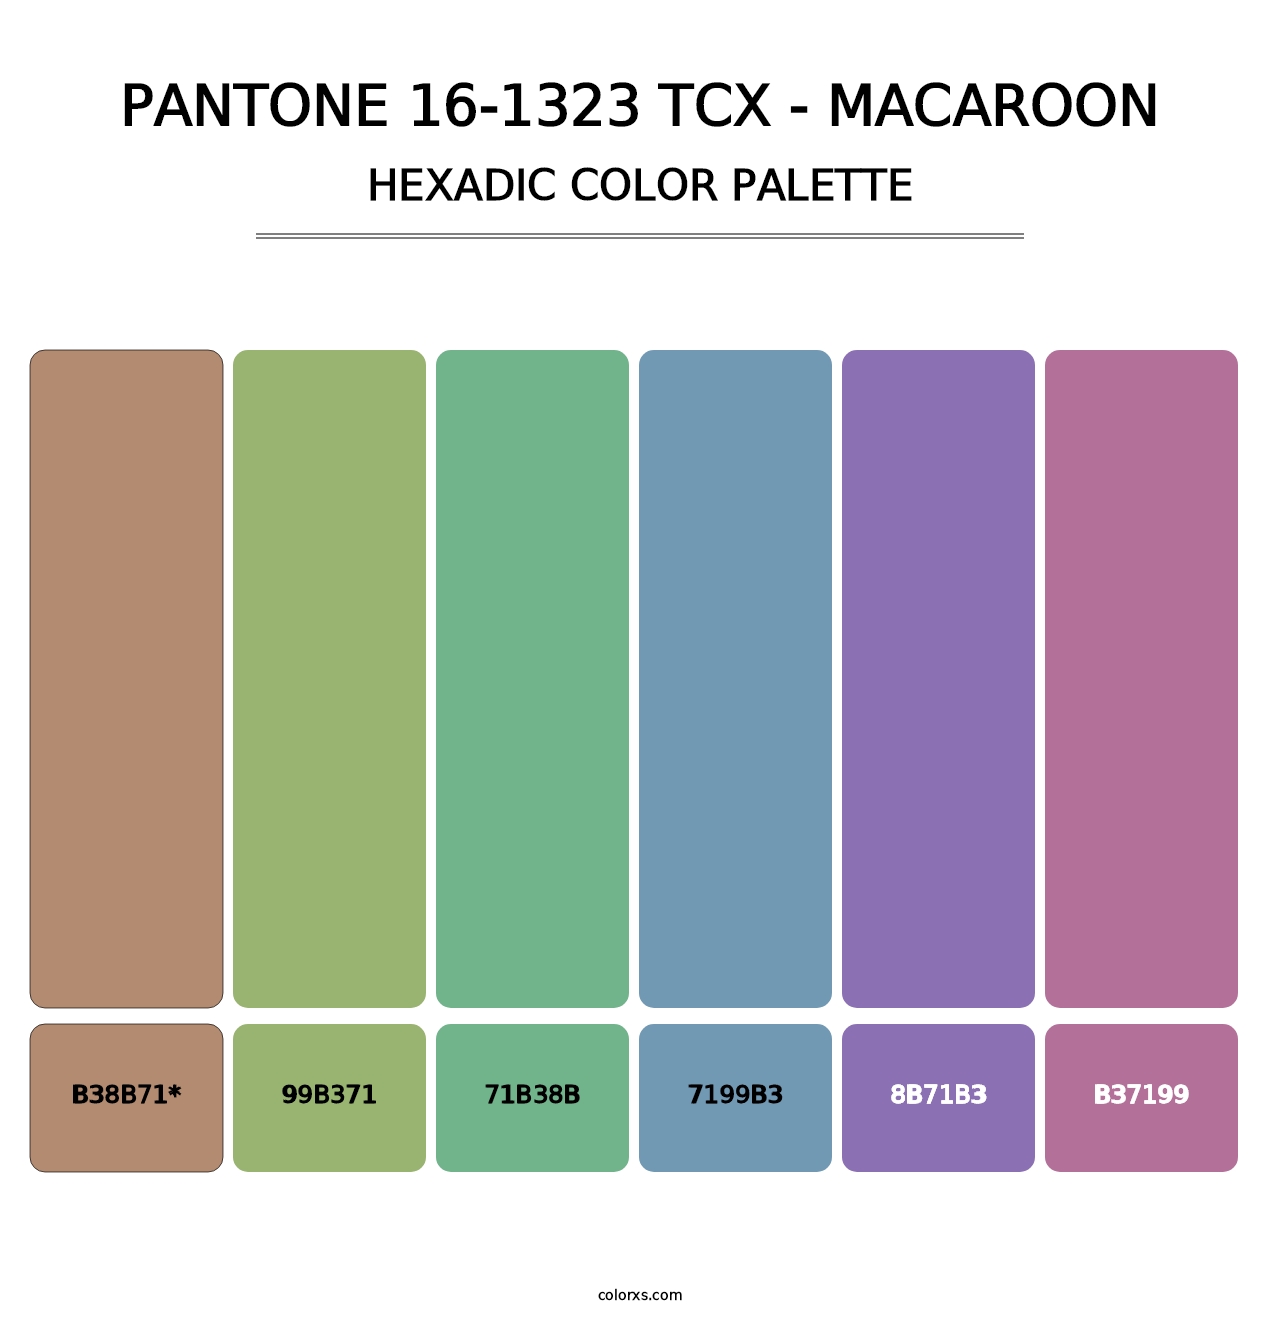 PANTONE 16-1323 TCX - Macaroon - Hexadic Color Palette